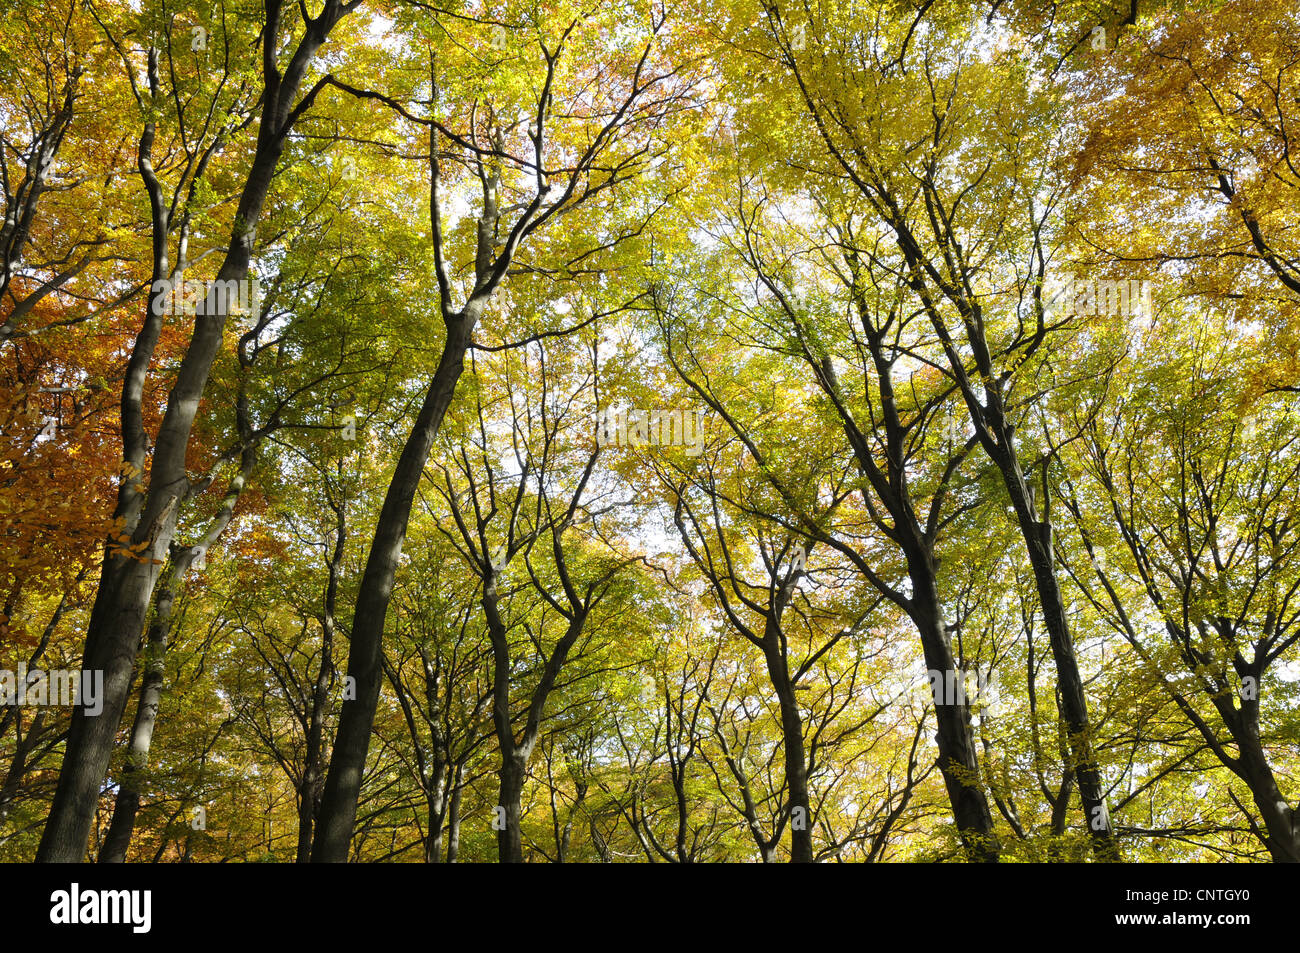 Le hêtre commun (Fagus sylvatica), bois de hêtre en automne, Allemagne Banque D'Images